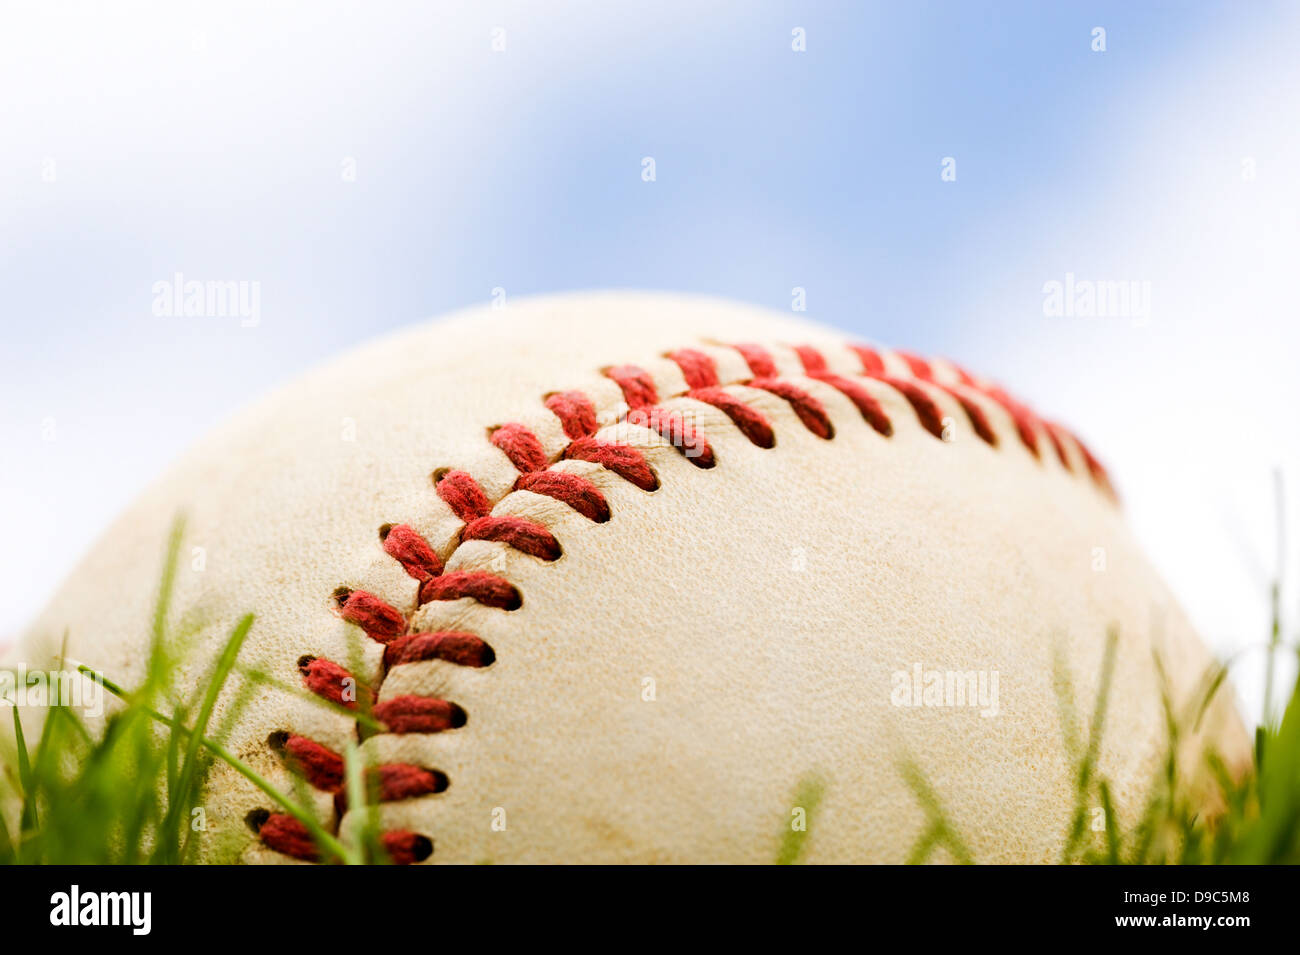 Nahaufnahme eines Baseballs in den Rasen gegen eine teilweise bewölkter Himmel liegen Stockfoto